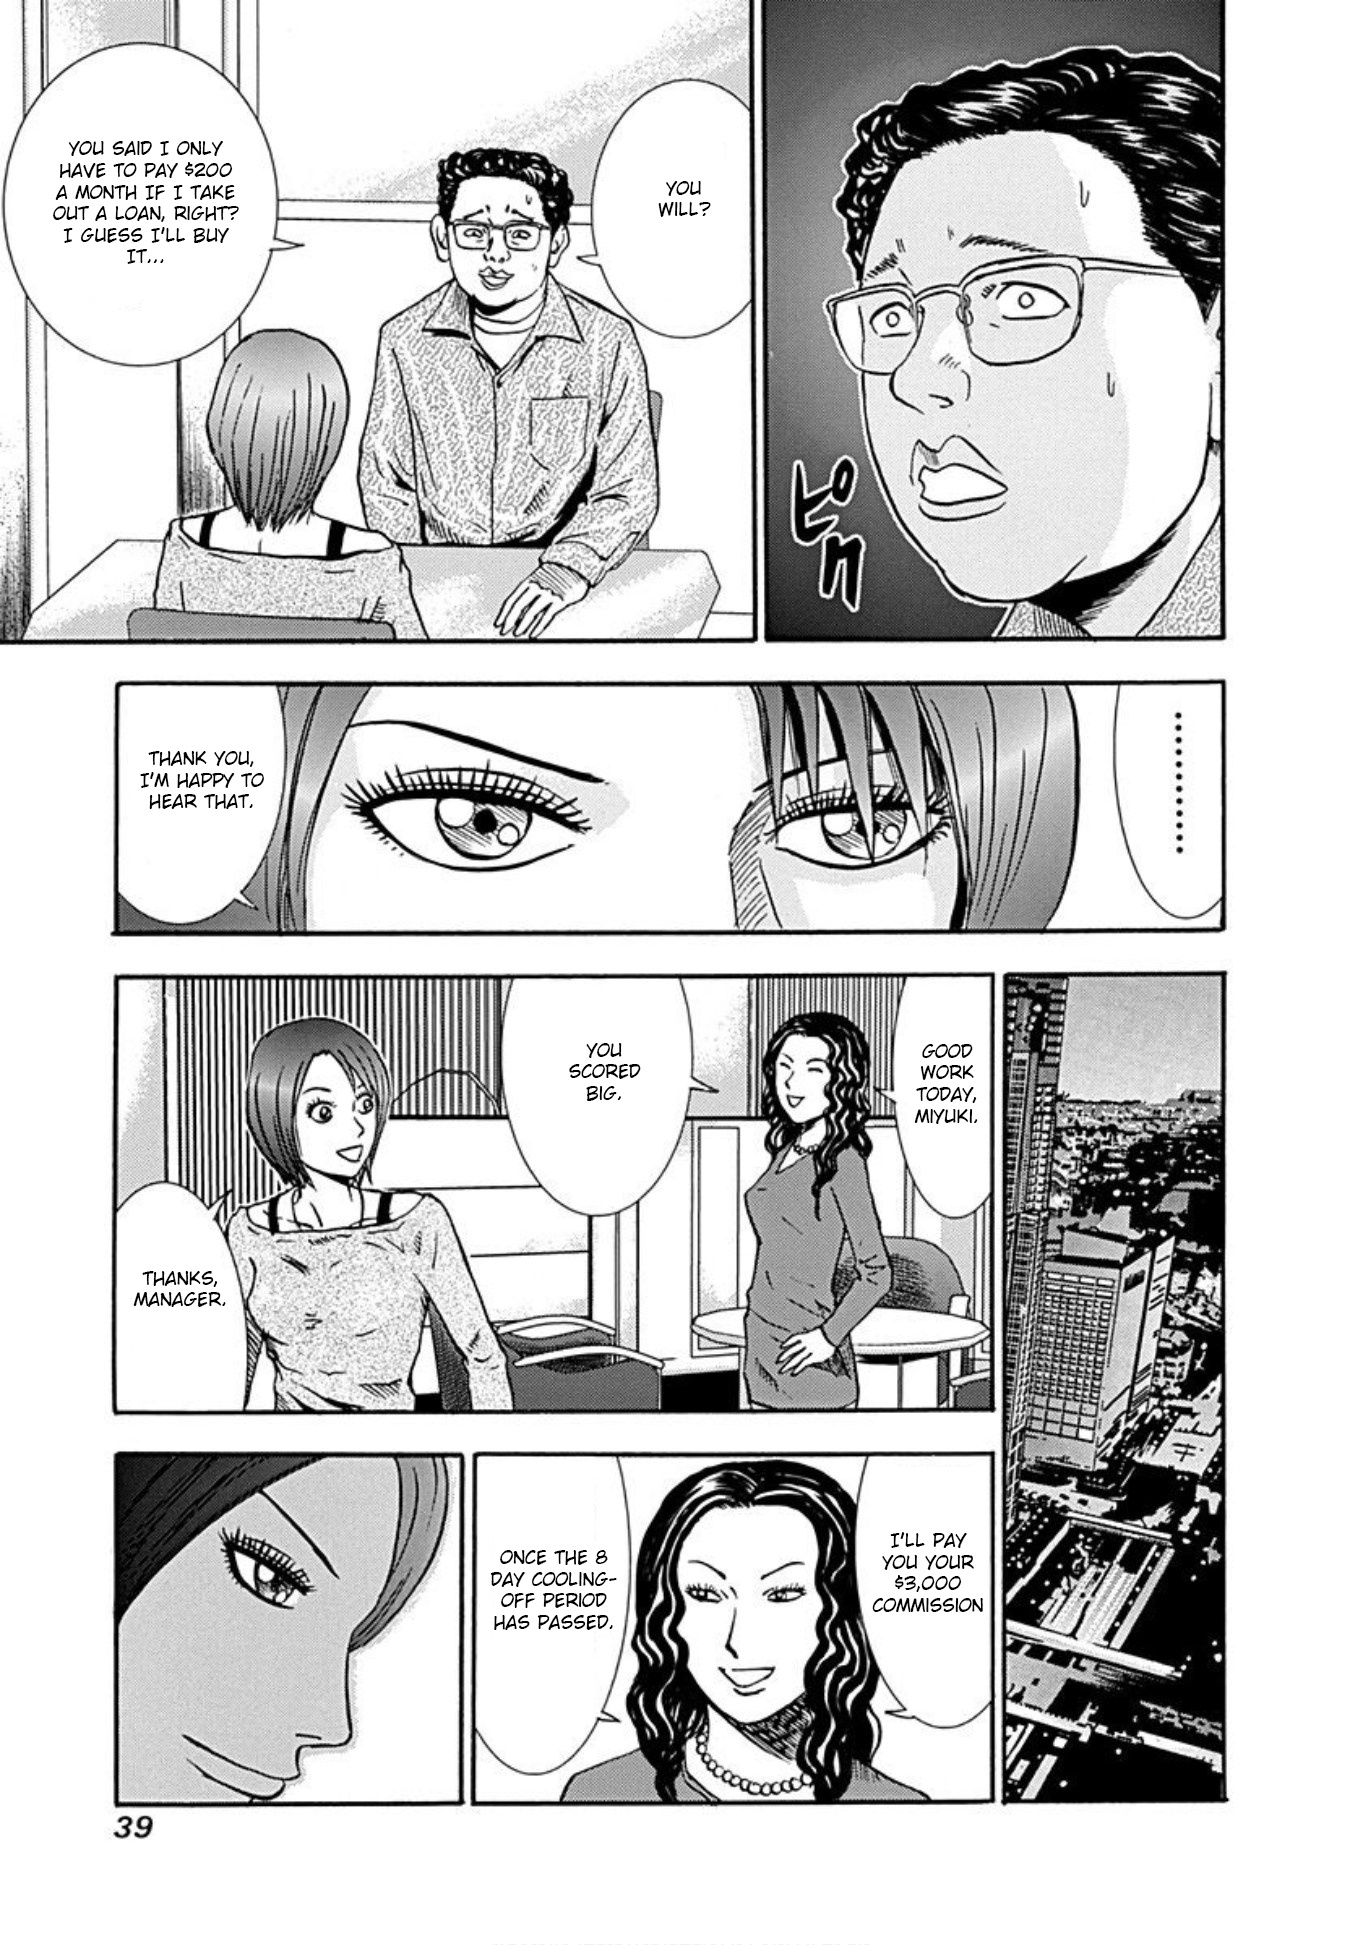 Uramiya Honpo - Page 2